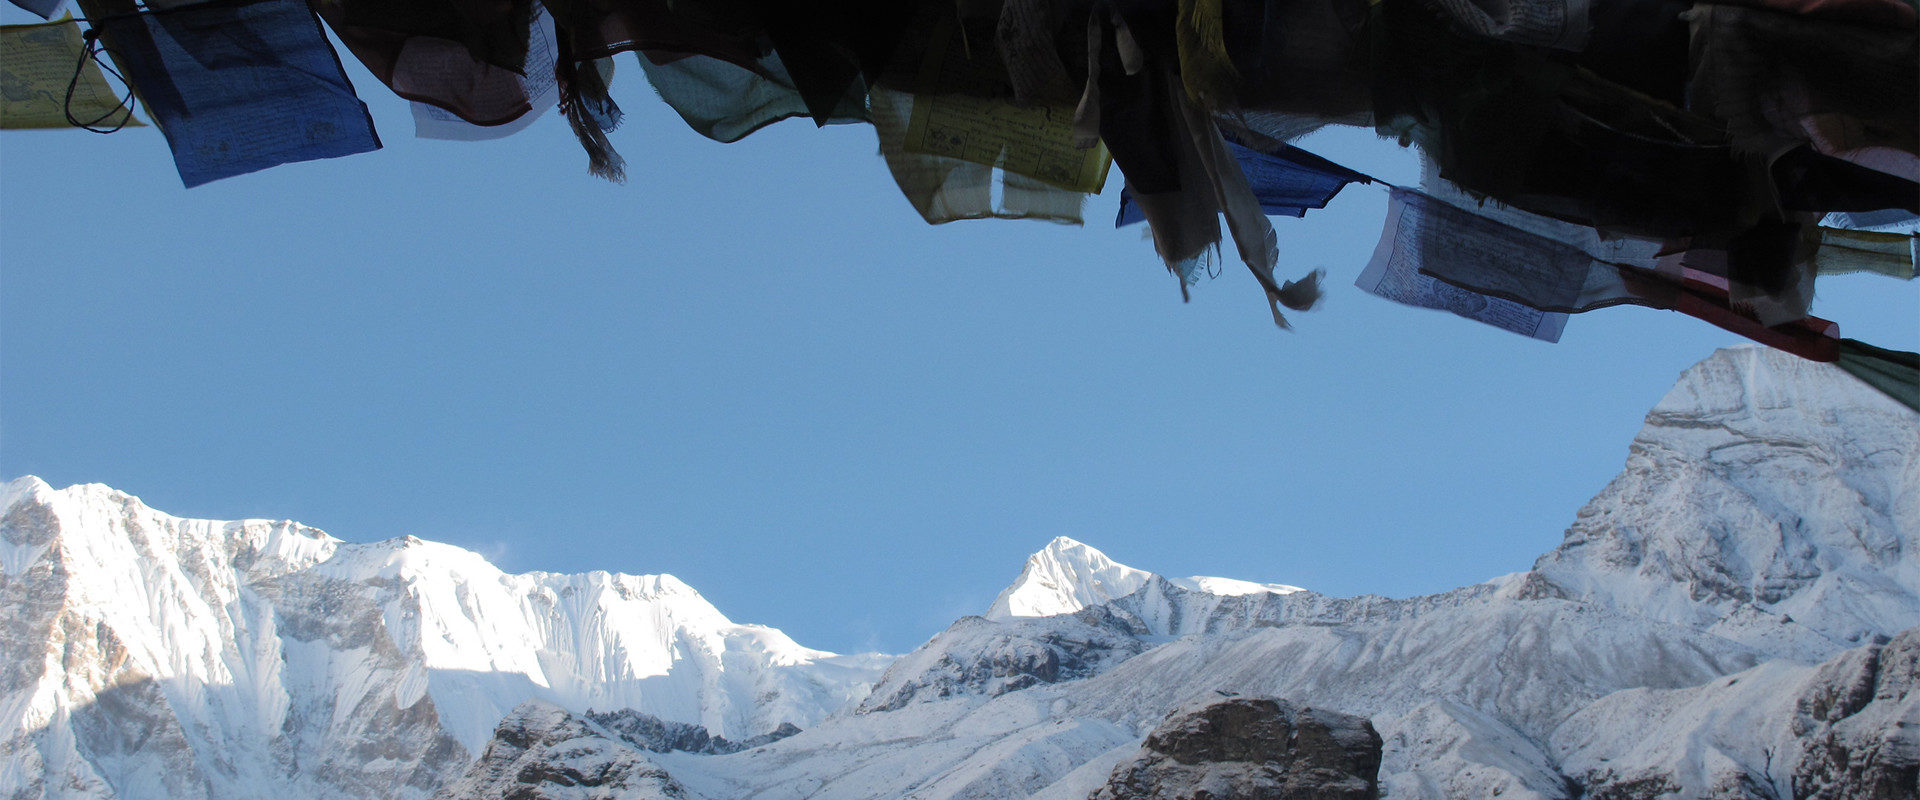 Silvana Steinhöfel Blickt durch die Gebetsfahnen auf die Gipfelriesen des Himalaya